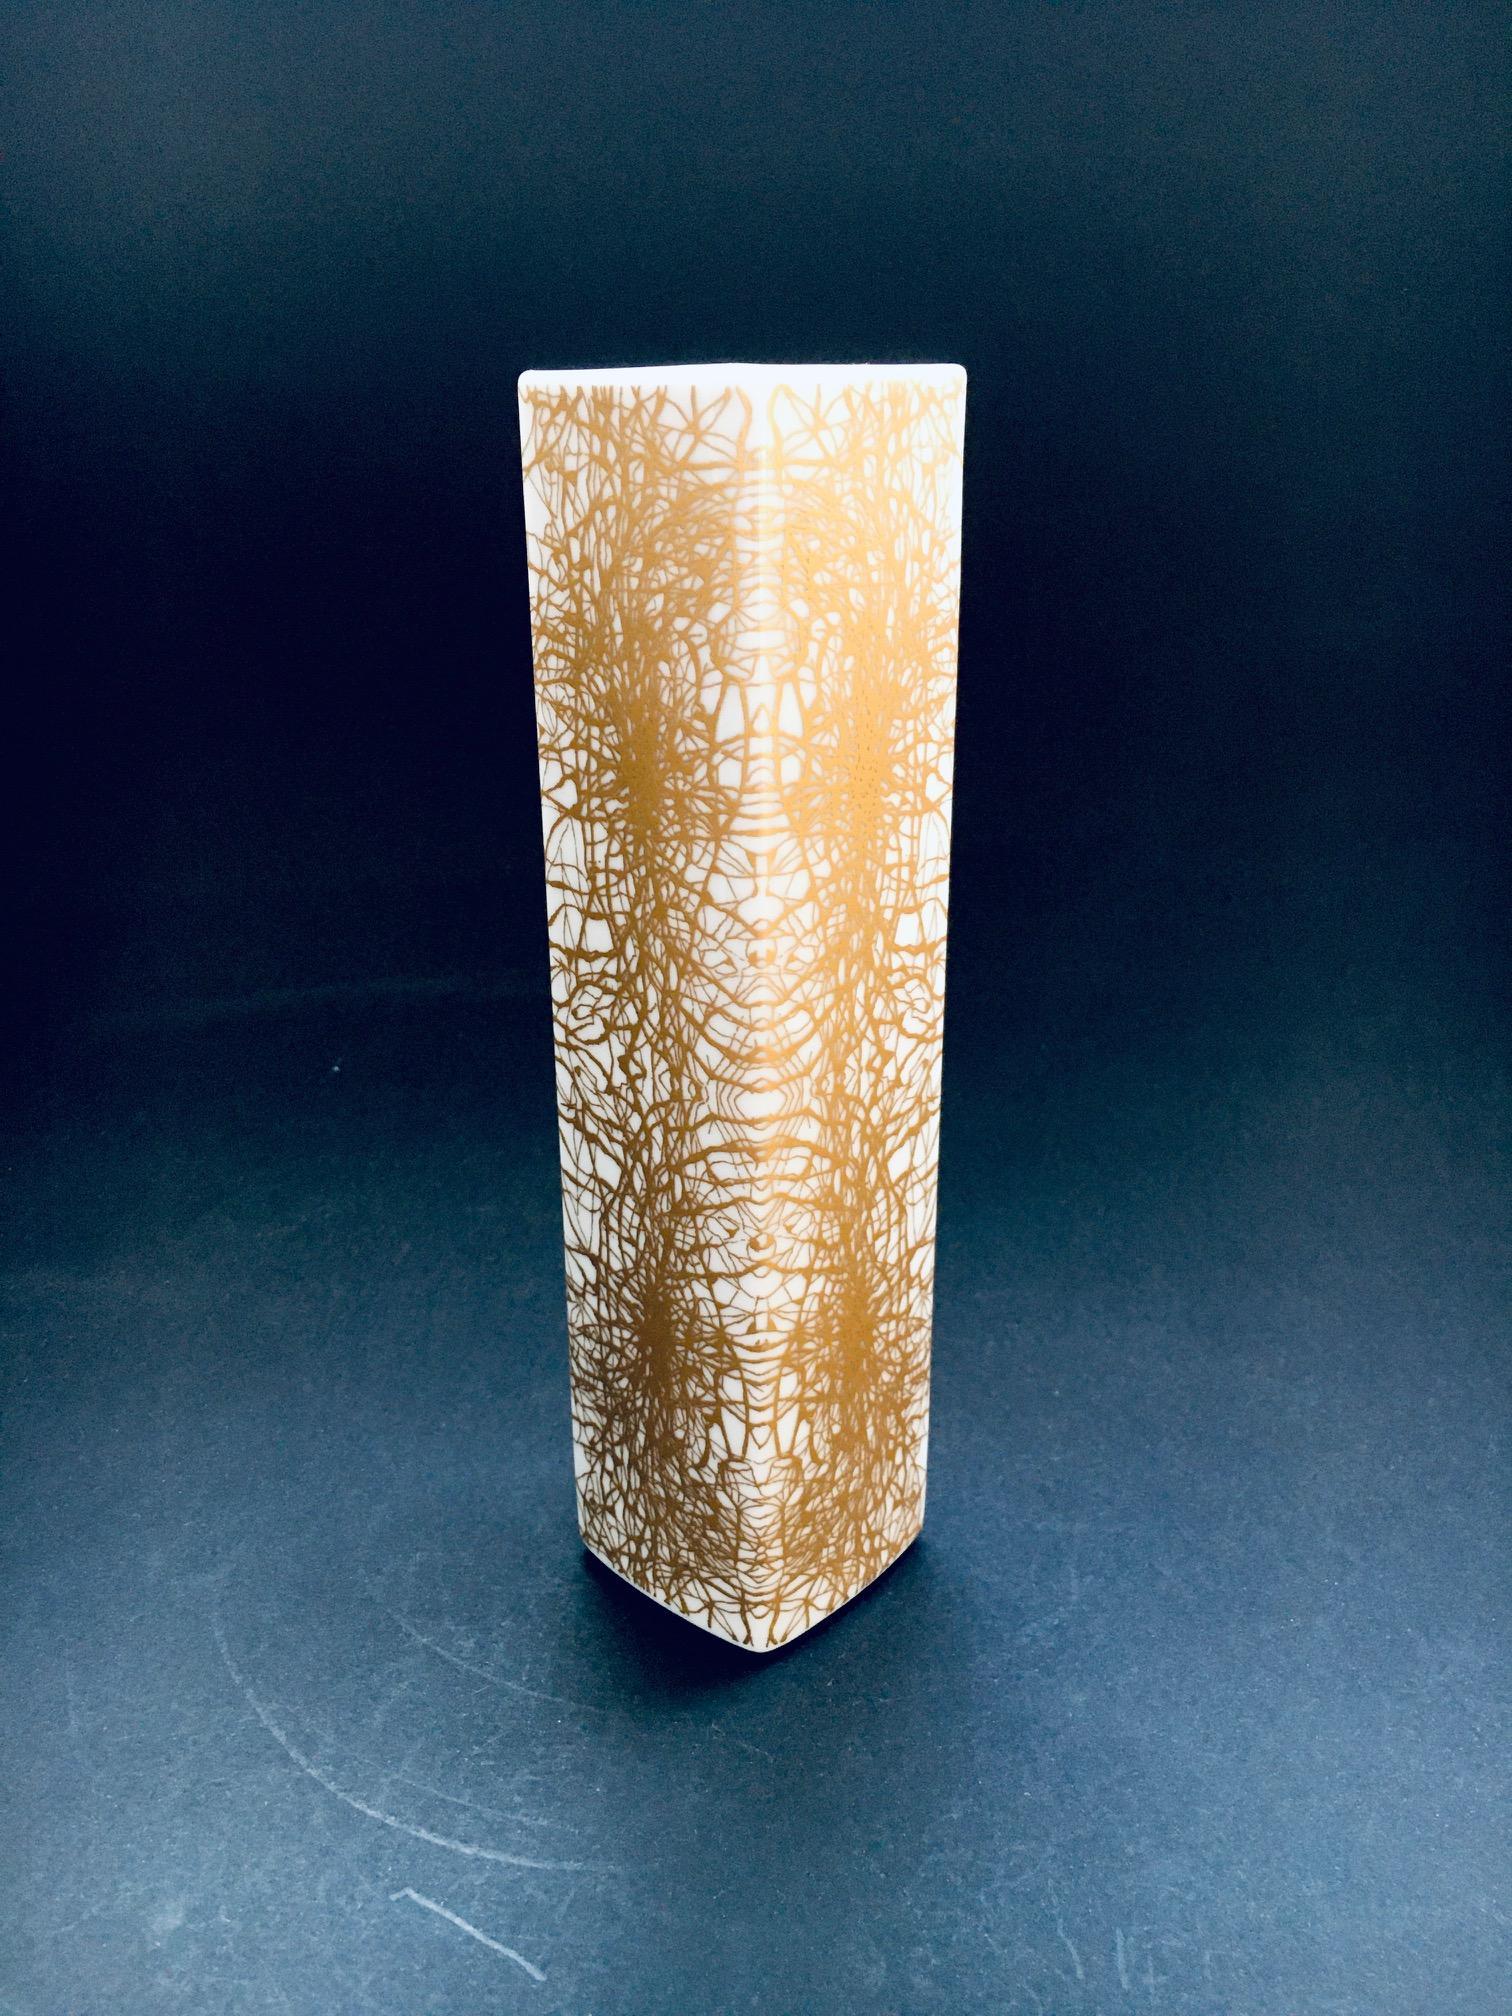 Vintage Midcentury Modern Design Gold glasiert Kunst Porzellan Keramik Blumenvase von Heinrich & Co SELB Bayern, Deutschland 1970er Jahre. Weißes Porzellan mit abstraktem Muster in Gold. Seltene Vase in tadellosem Zustand. Markiert auf der